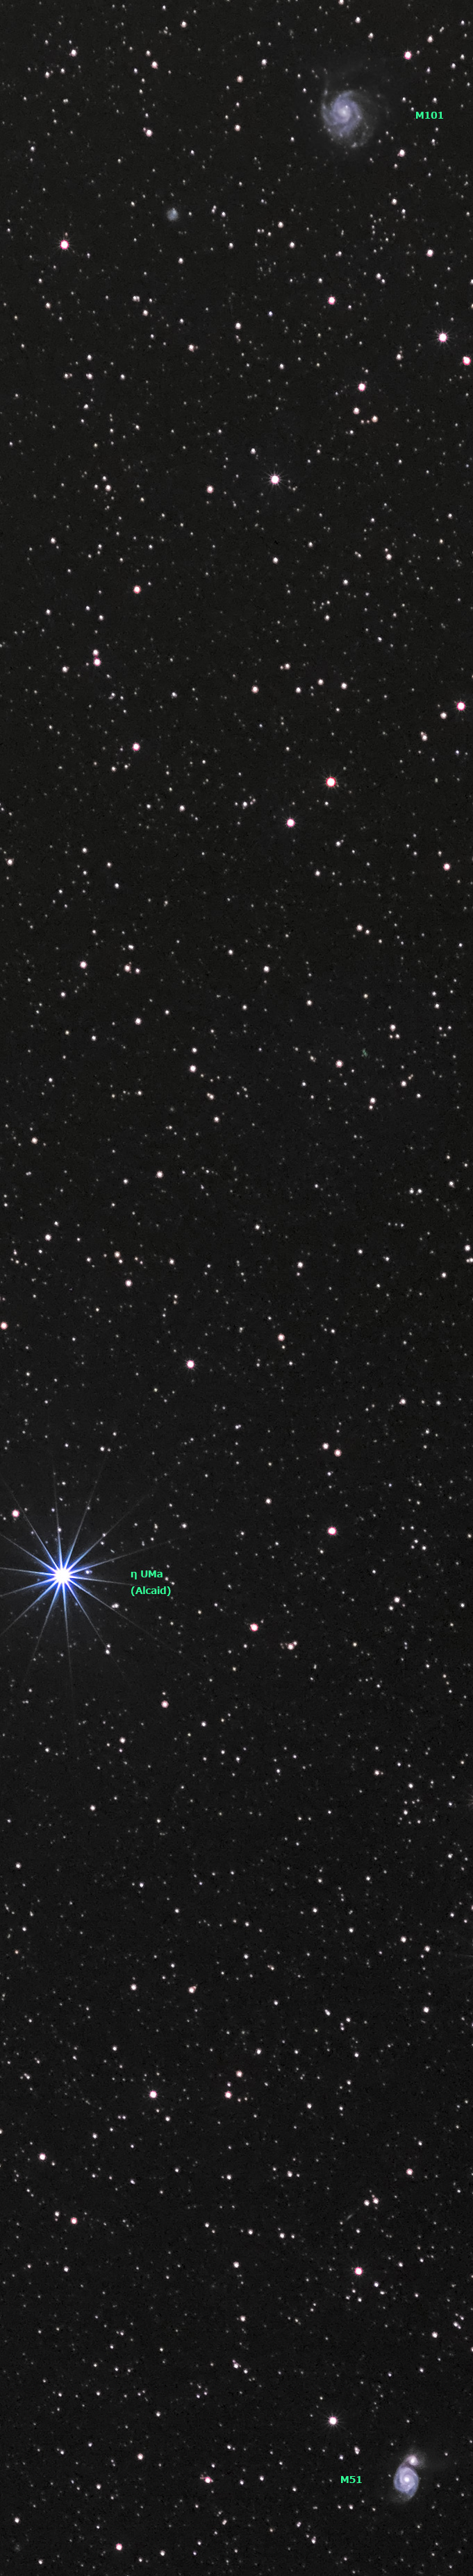 20140131-M51-M101